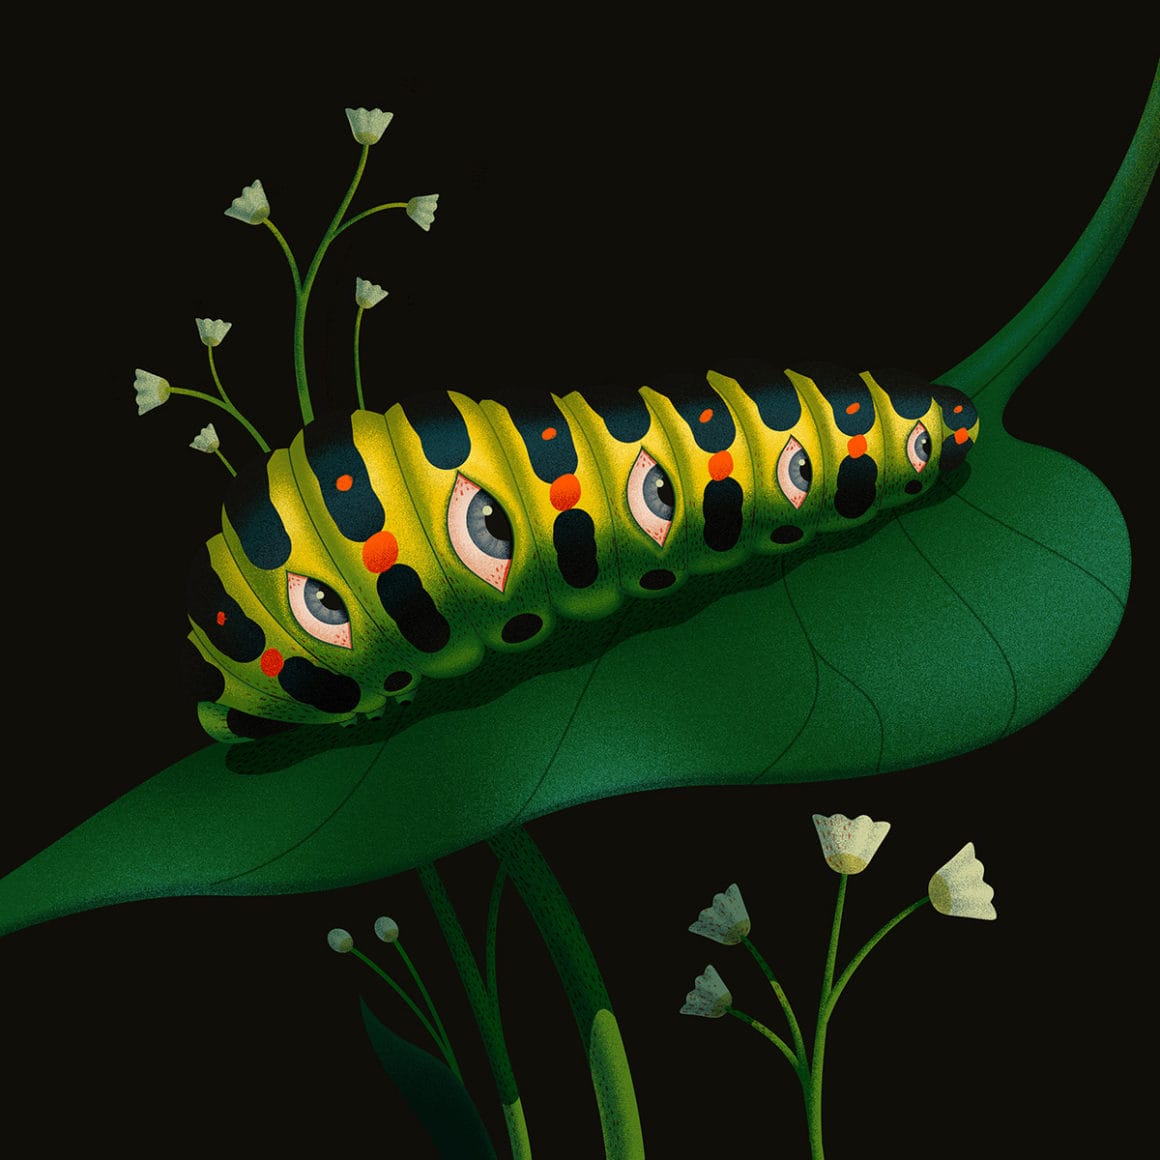 Caterpillar par Ana Miminoshvili pour sa série Blooming Eyes